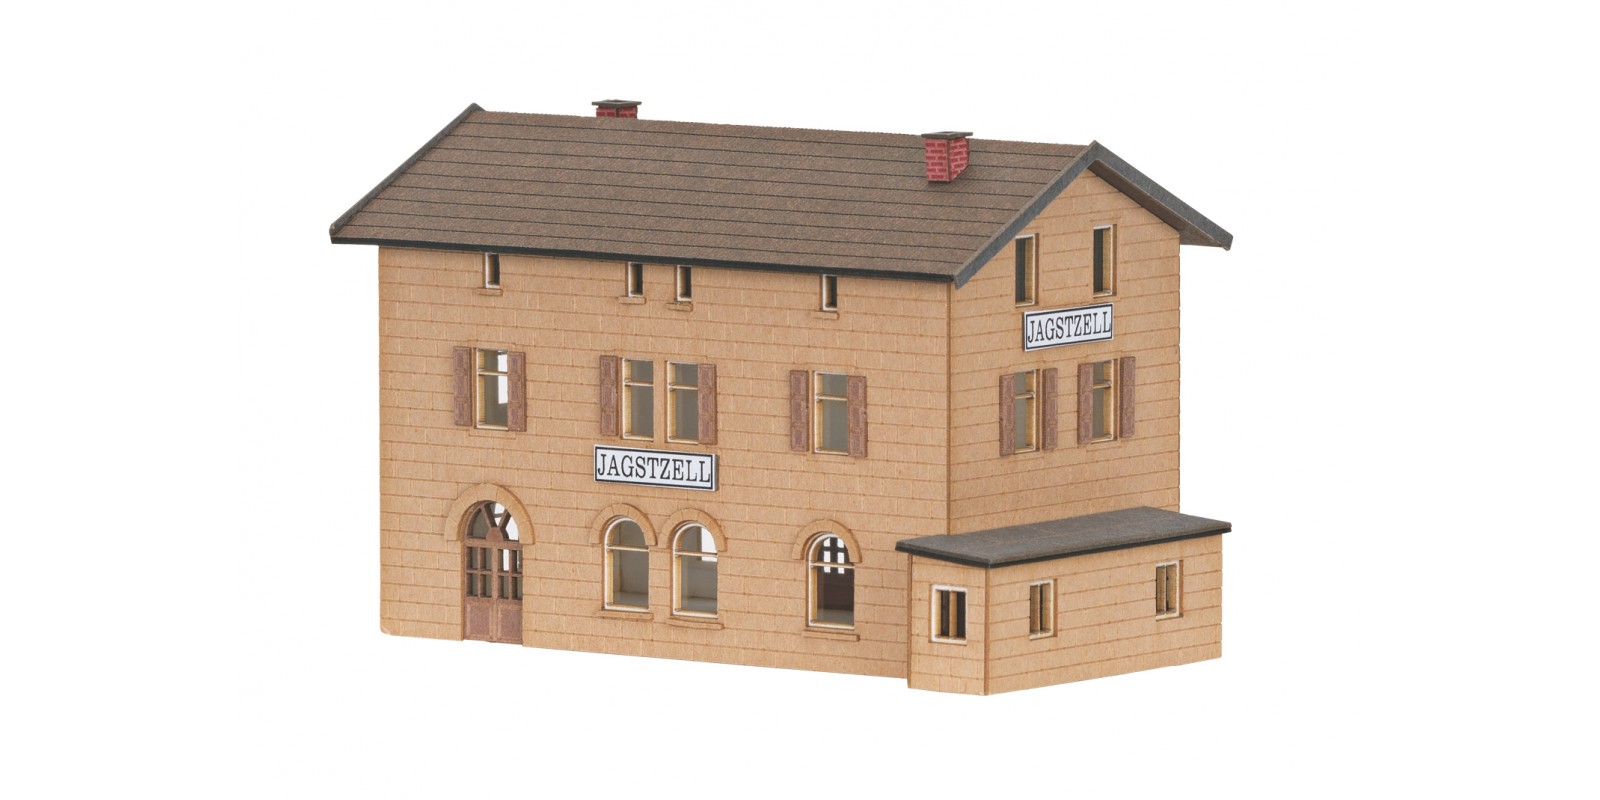 89708 Building Kit for Jagstzell Station